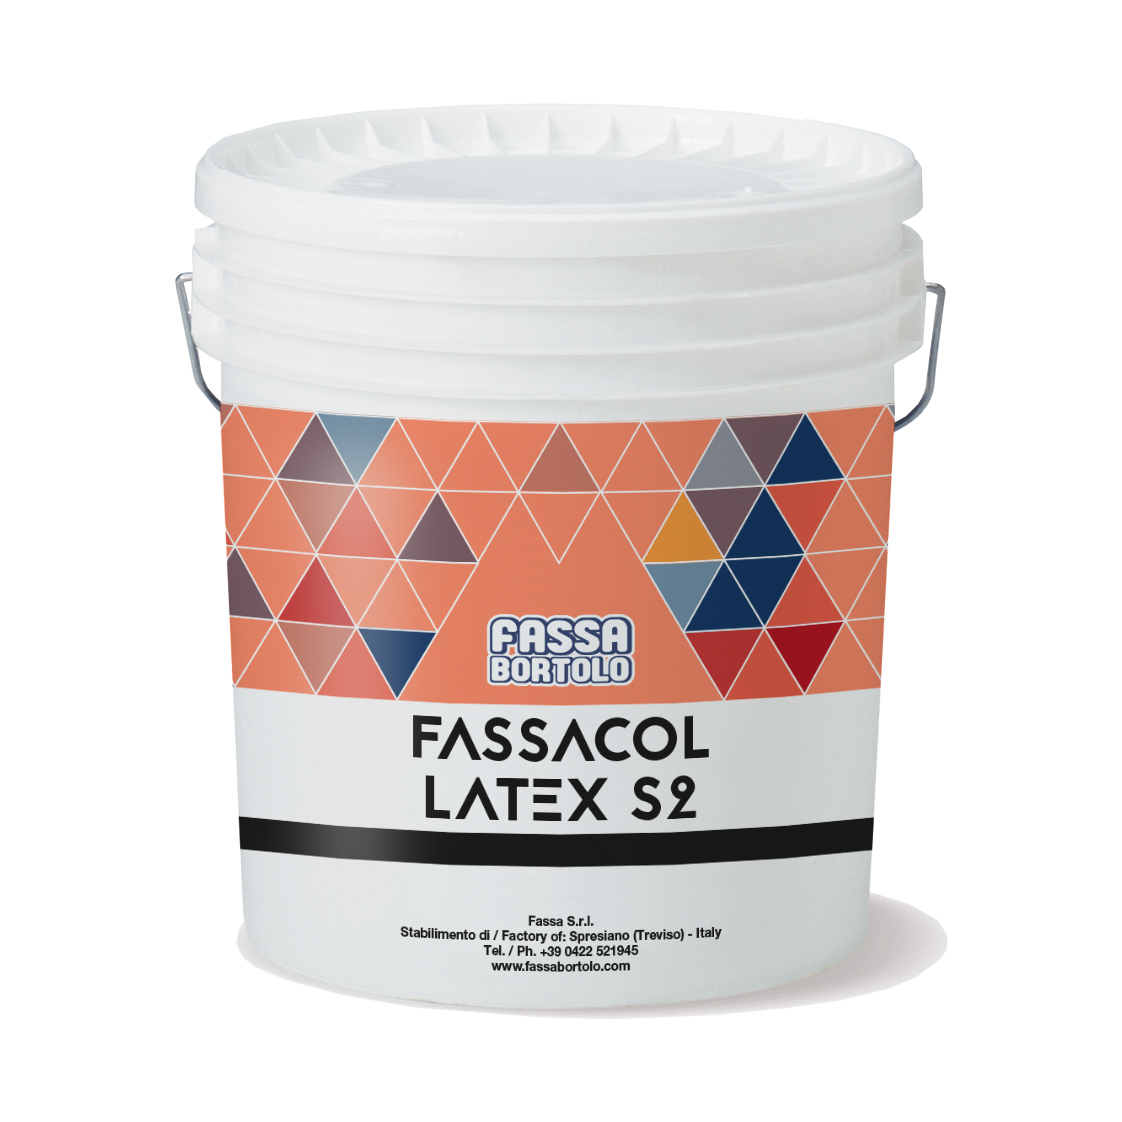 FASSACOL LATEX S2: Lattice superelastico per adesivi cementizi